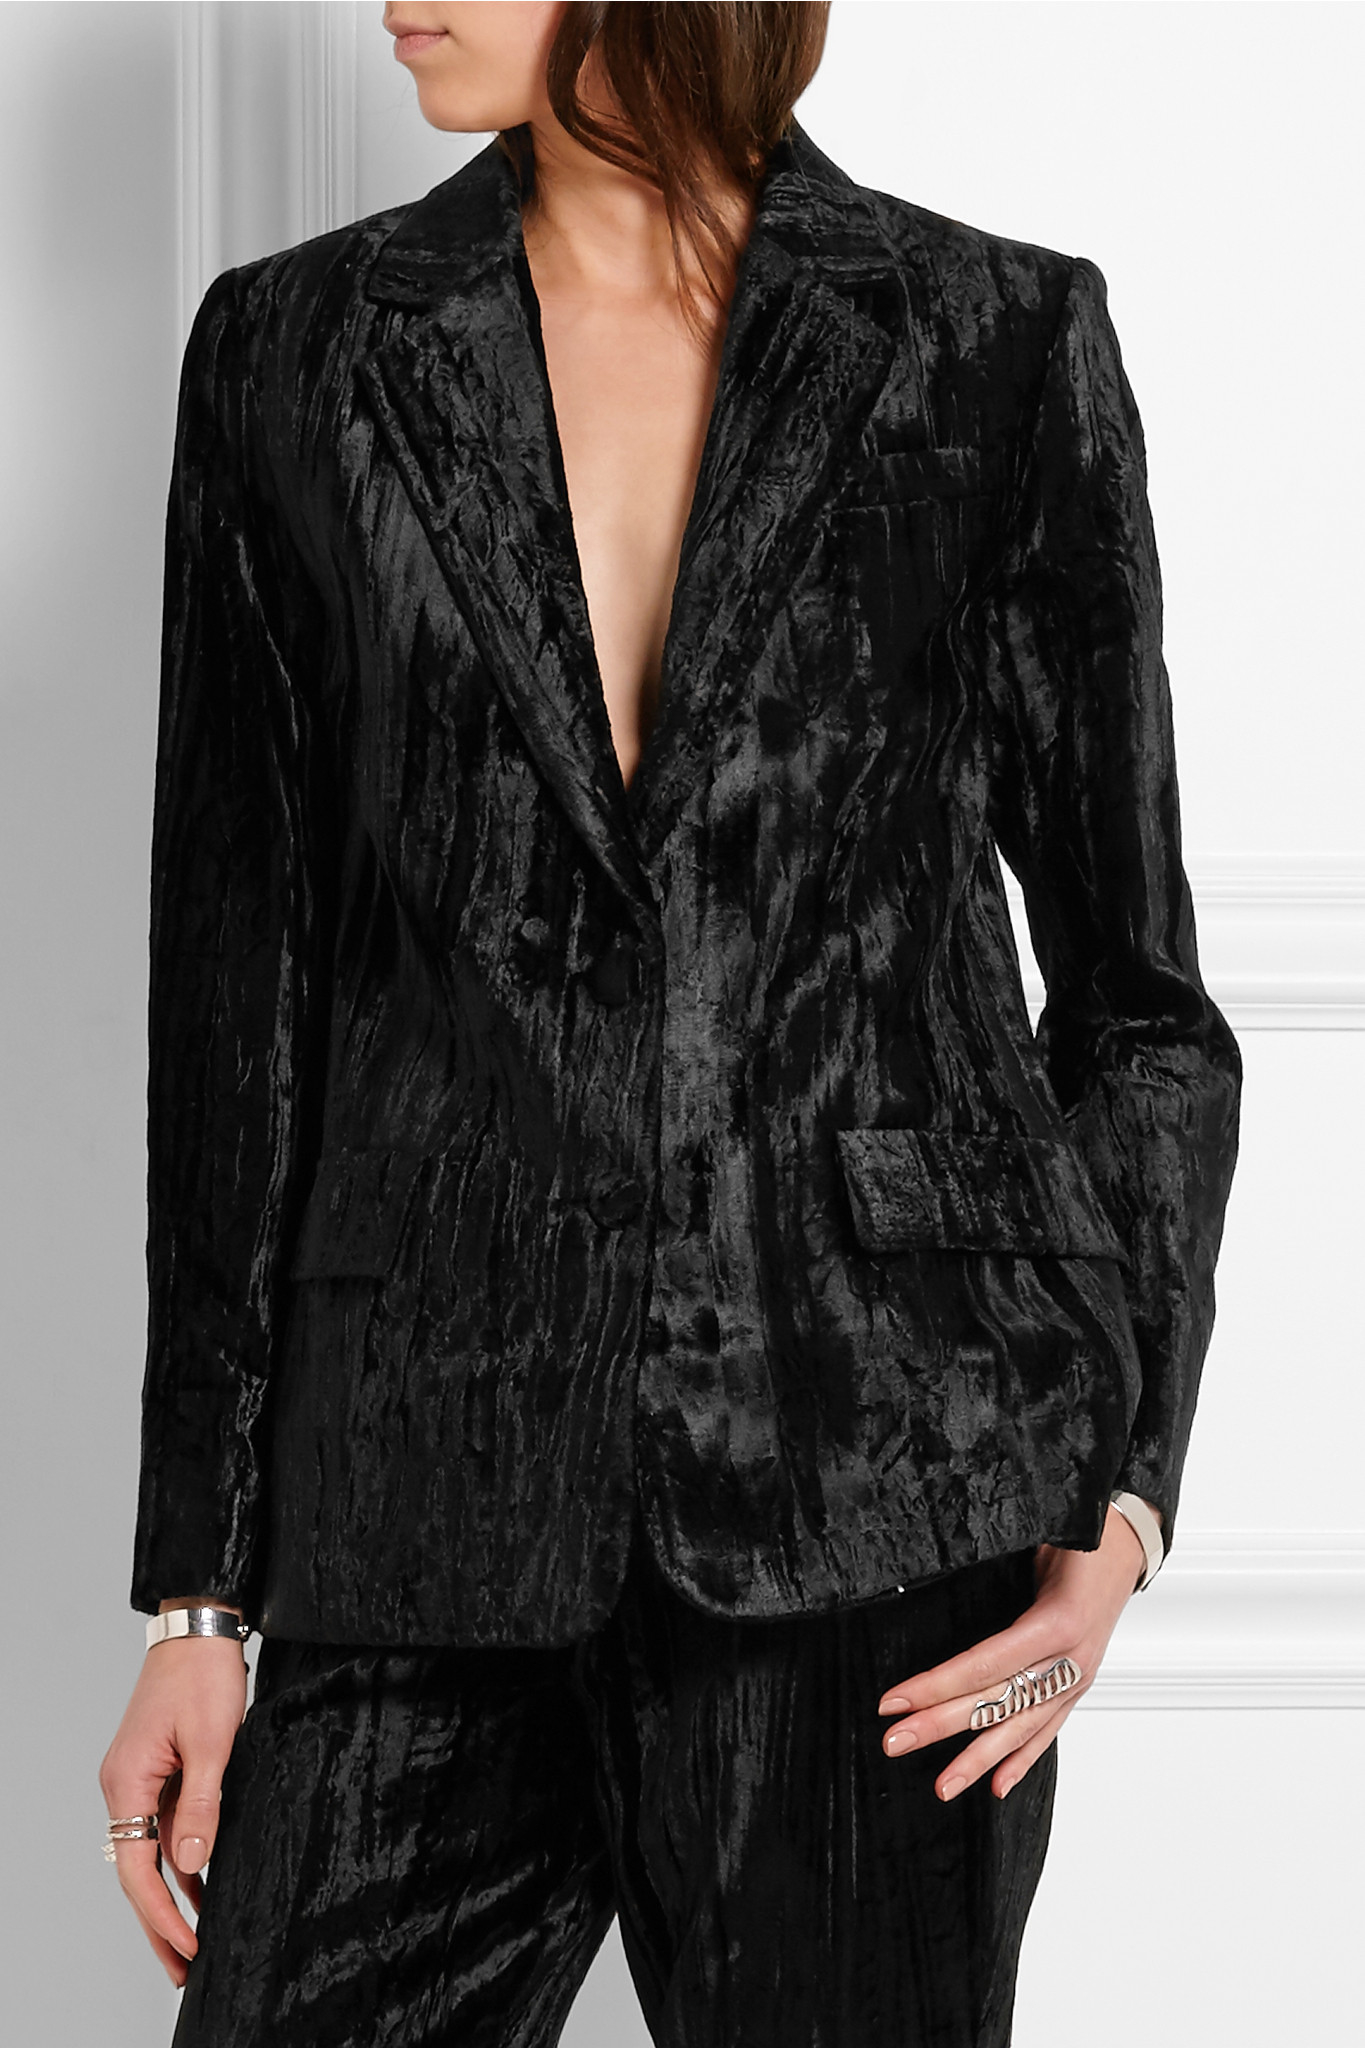 Topshop Crushed Velvet Suit Flash Sales, UP TO 64% OFF |  www.eduardbarcelo.com